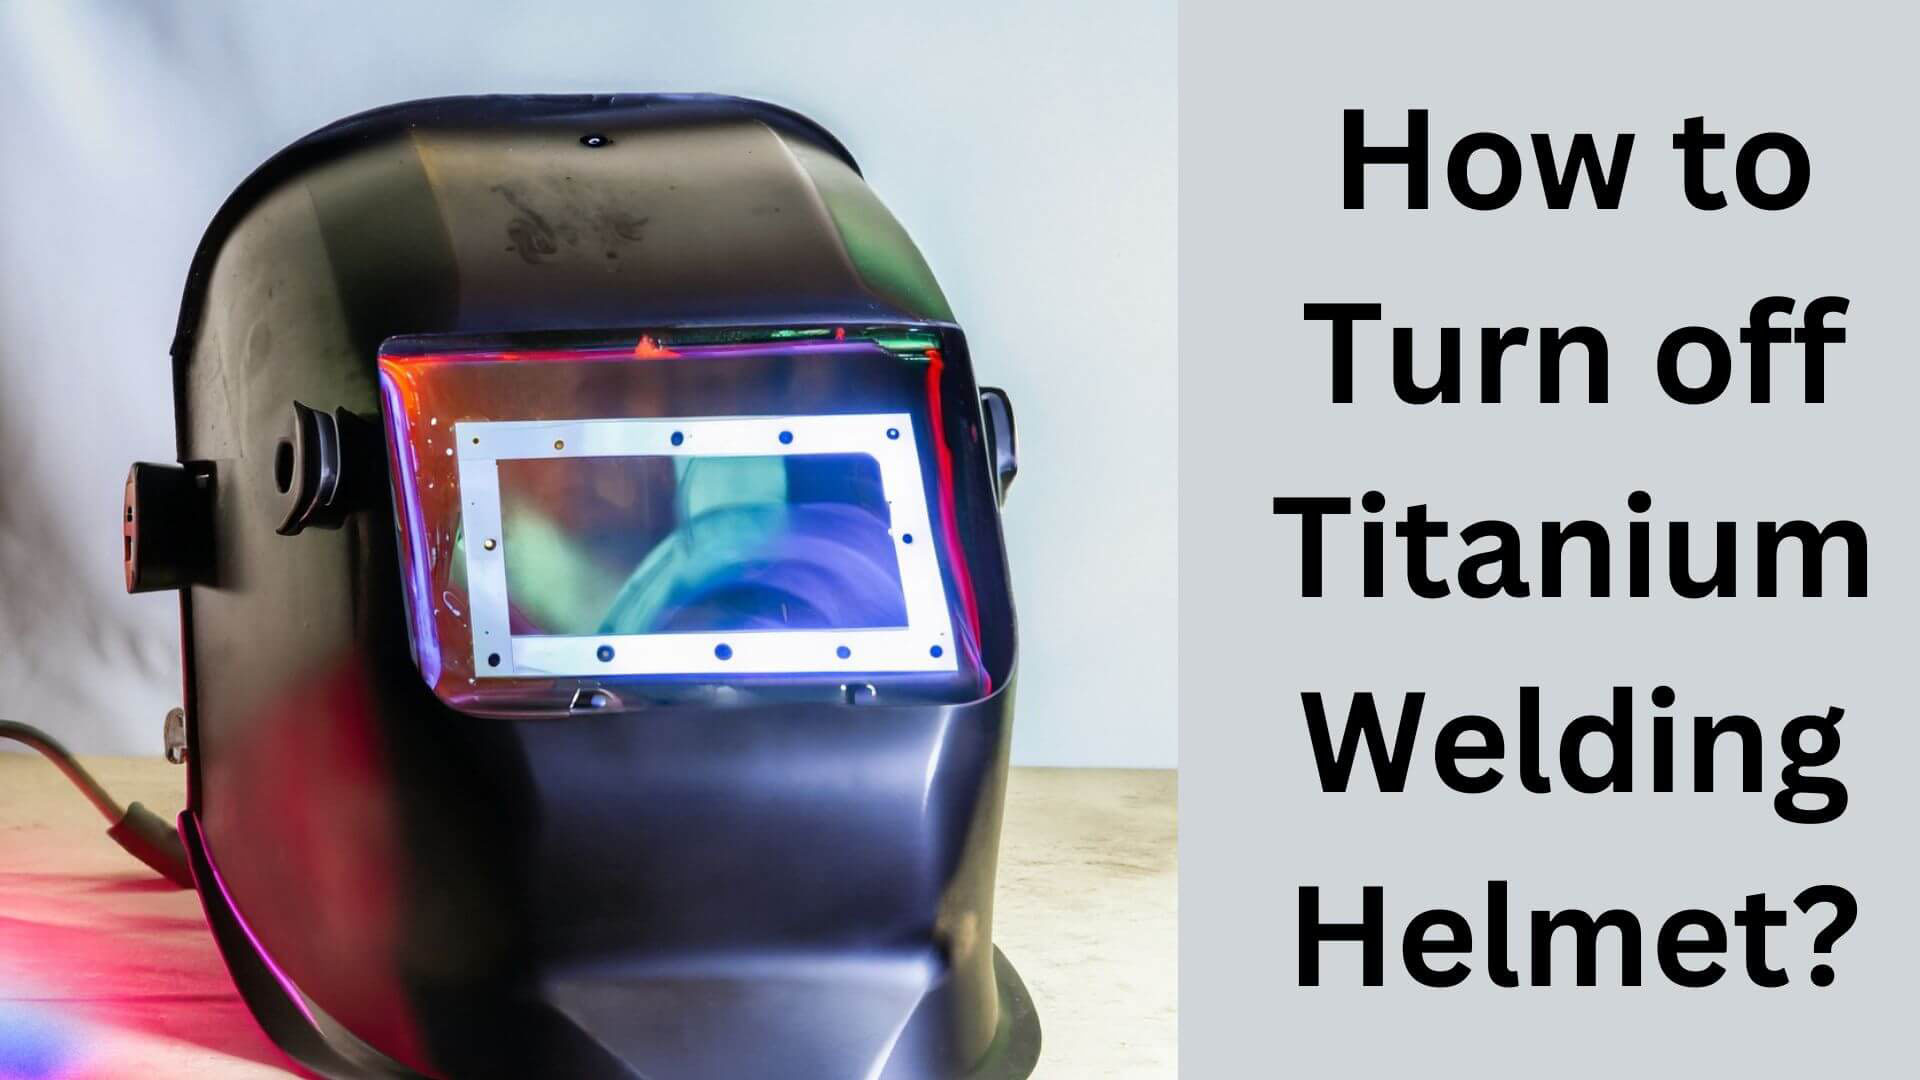 How to Turn off Titanium Welding Helmet?